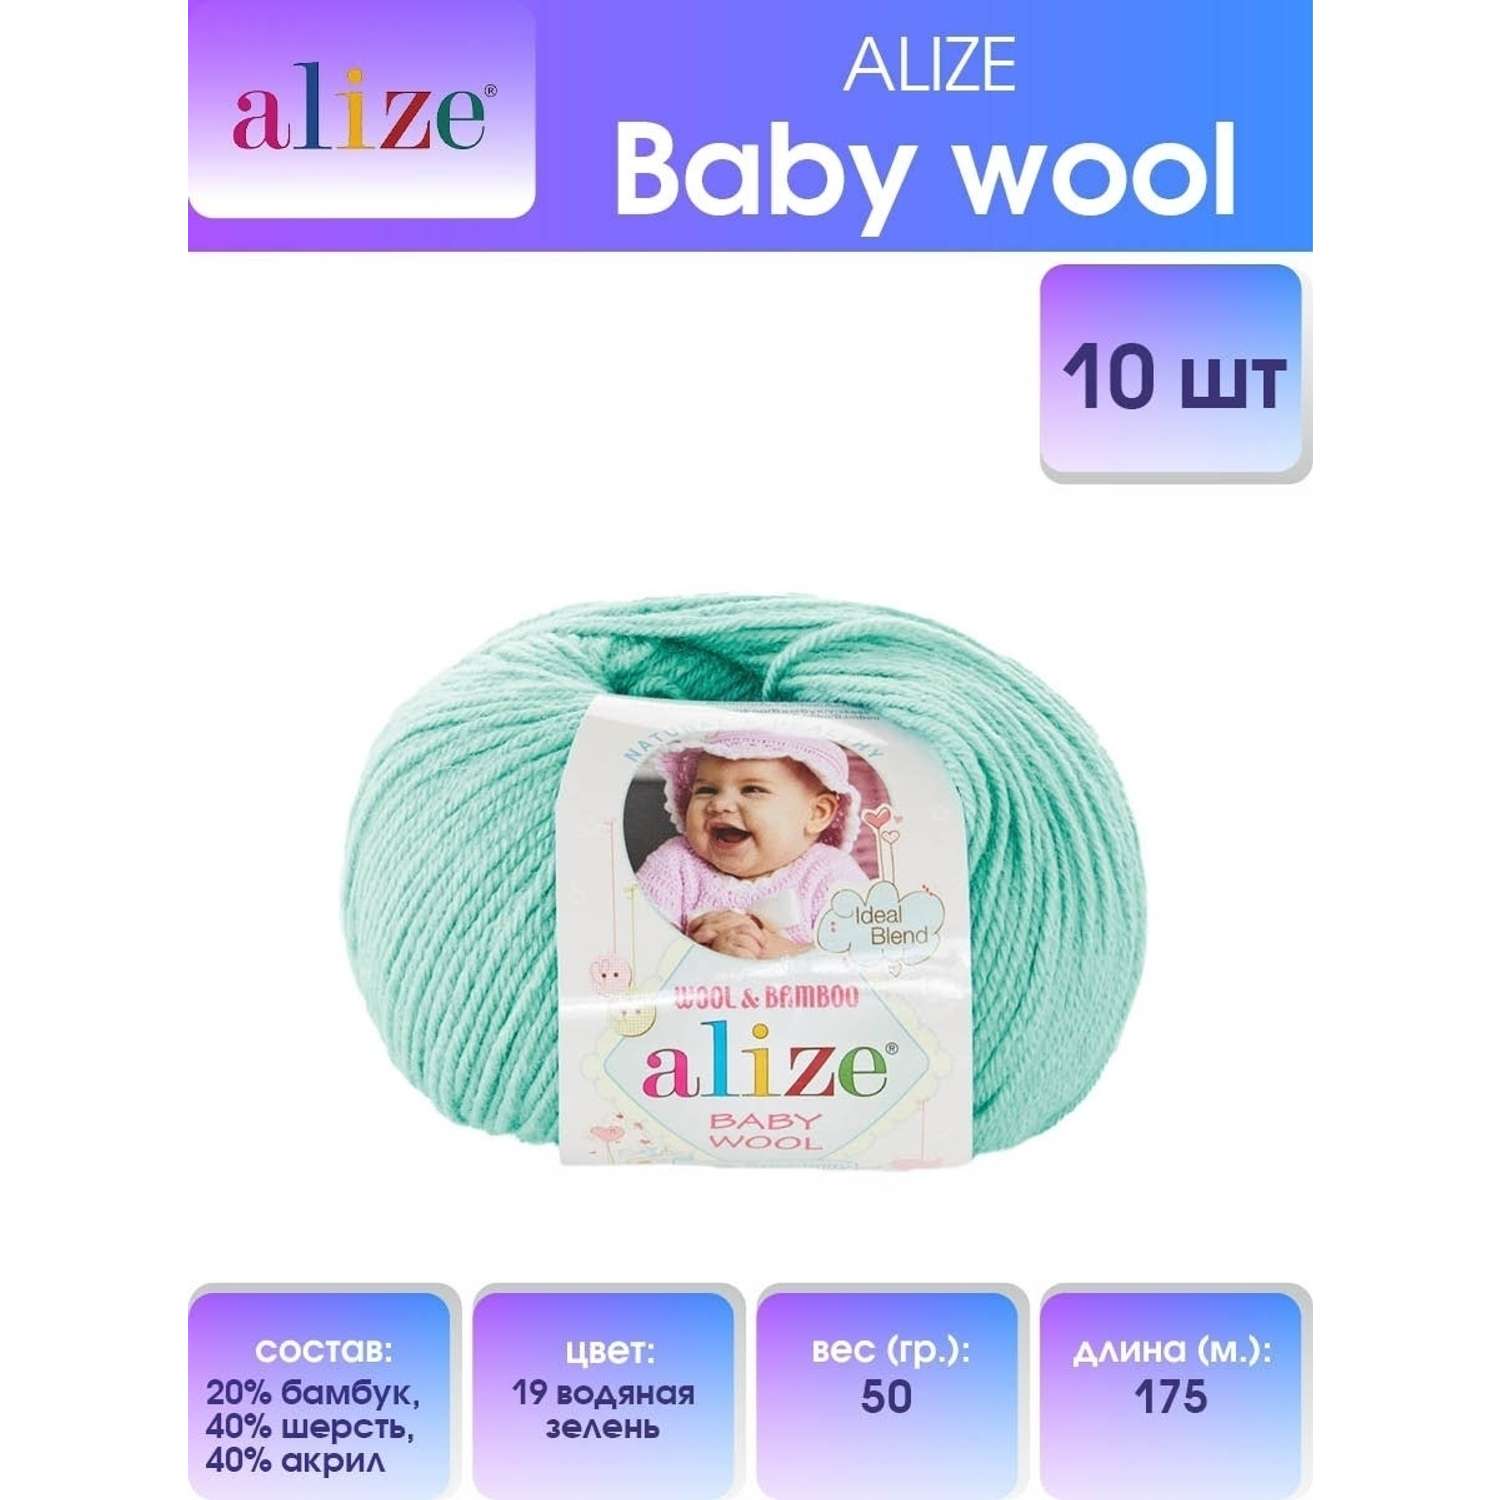 Пряжа для вязания Alize baby wool бамбук шерсть акрил мягкая 50 гр 175 м 19 водяная зелень 10 мотков - фото 1